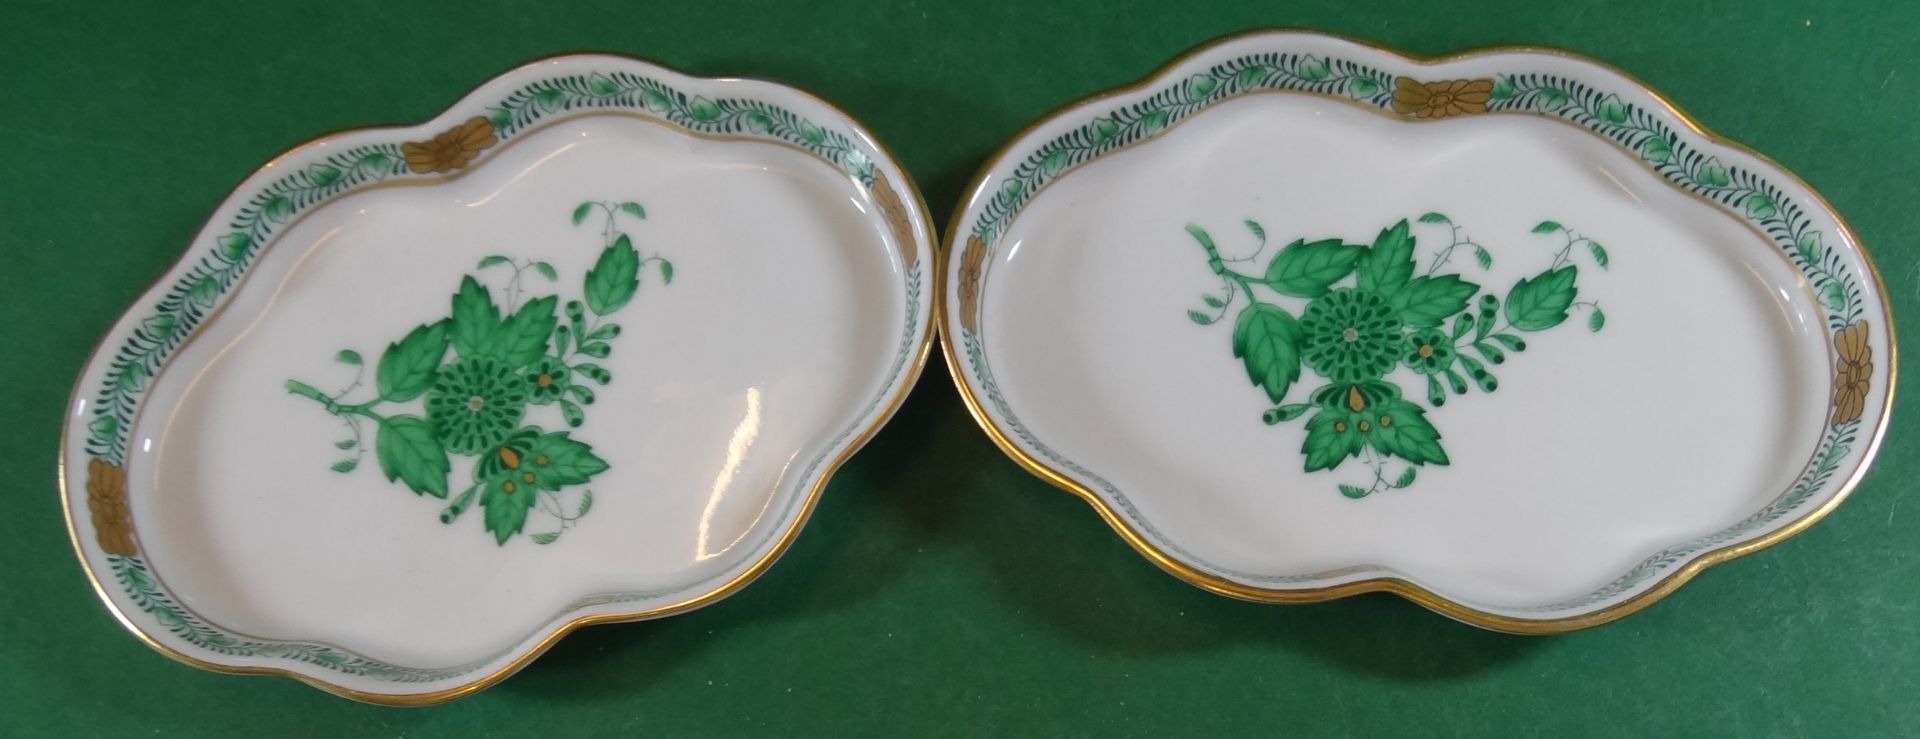 2 ovale Schalen "Herend" Apponyi grün, 13x9 cm - Bild 2 aus 4